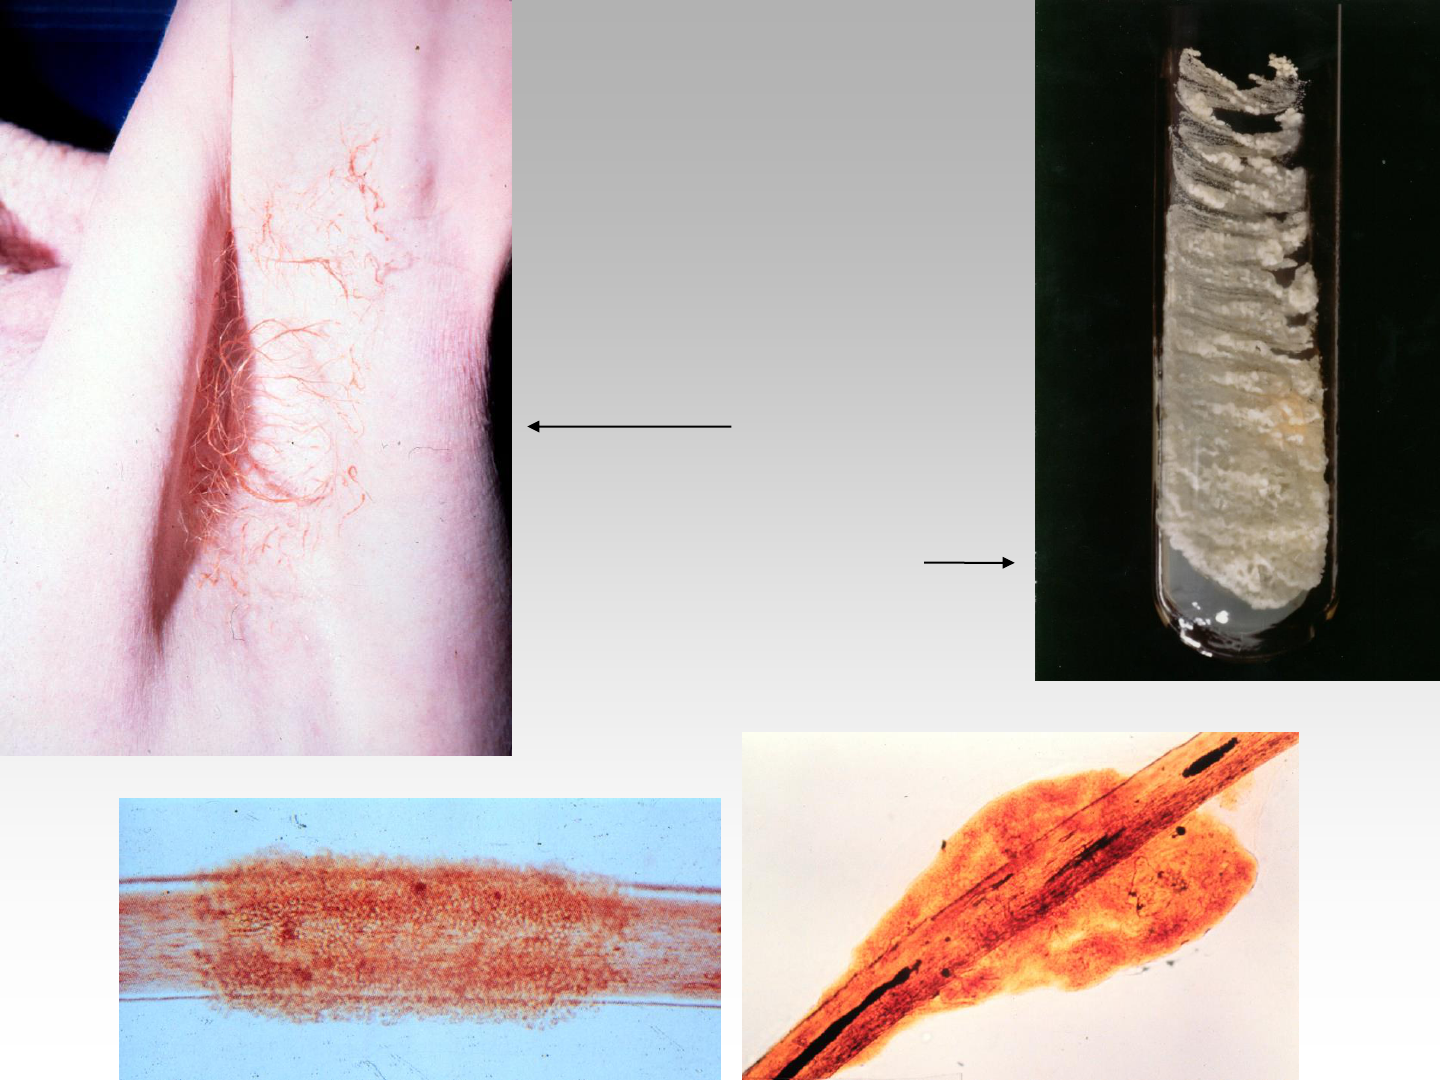 Micose na virilha (tinea cruris): sintomas e tratamento